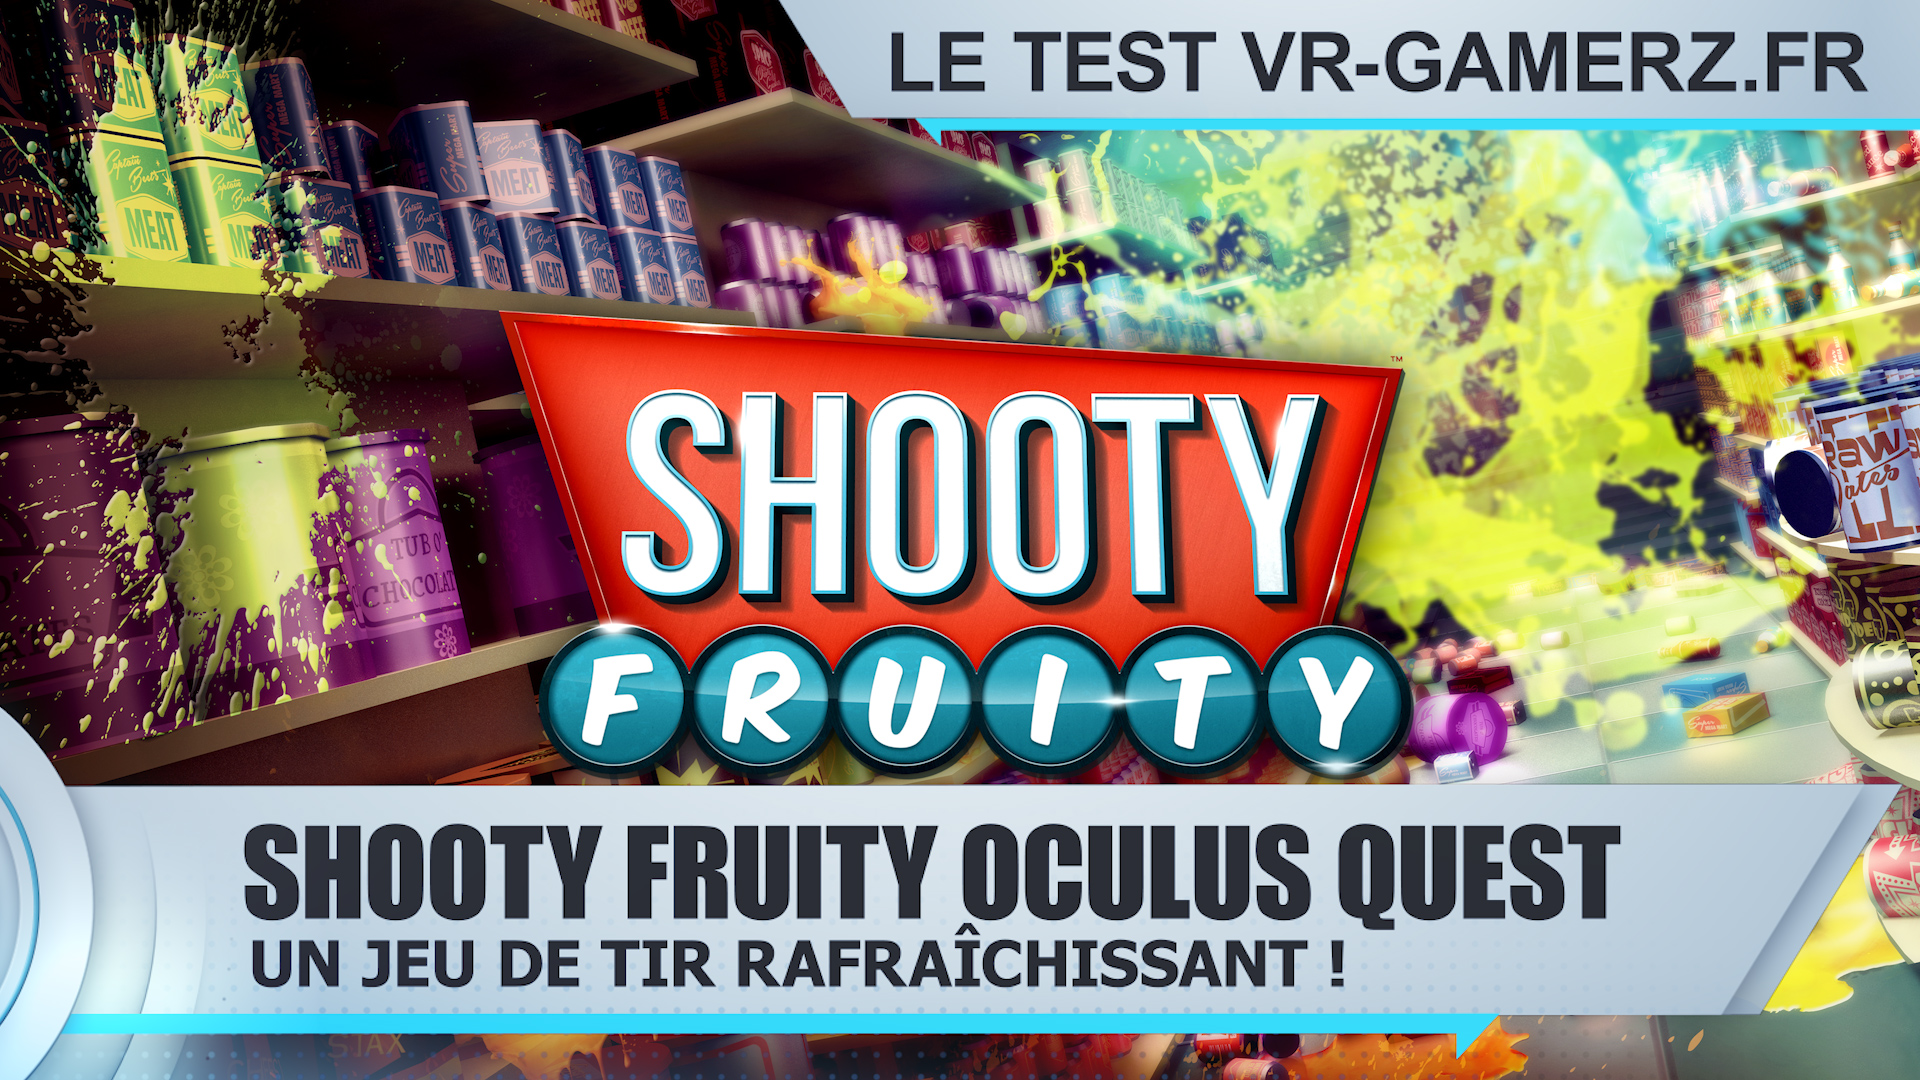 Test Shooty fruity Oculus quest : Un jeu de tir rafraîchissant !